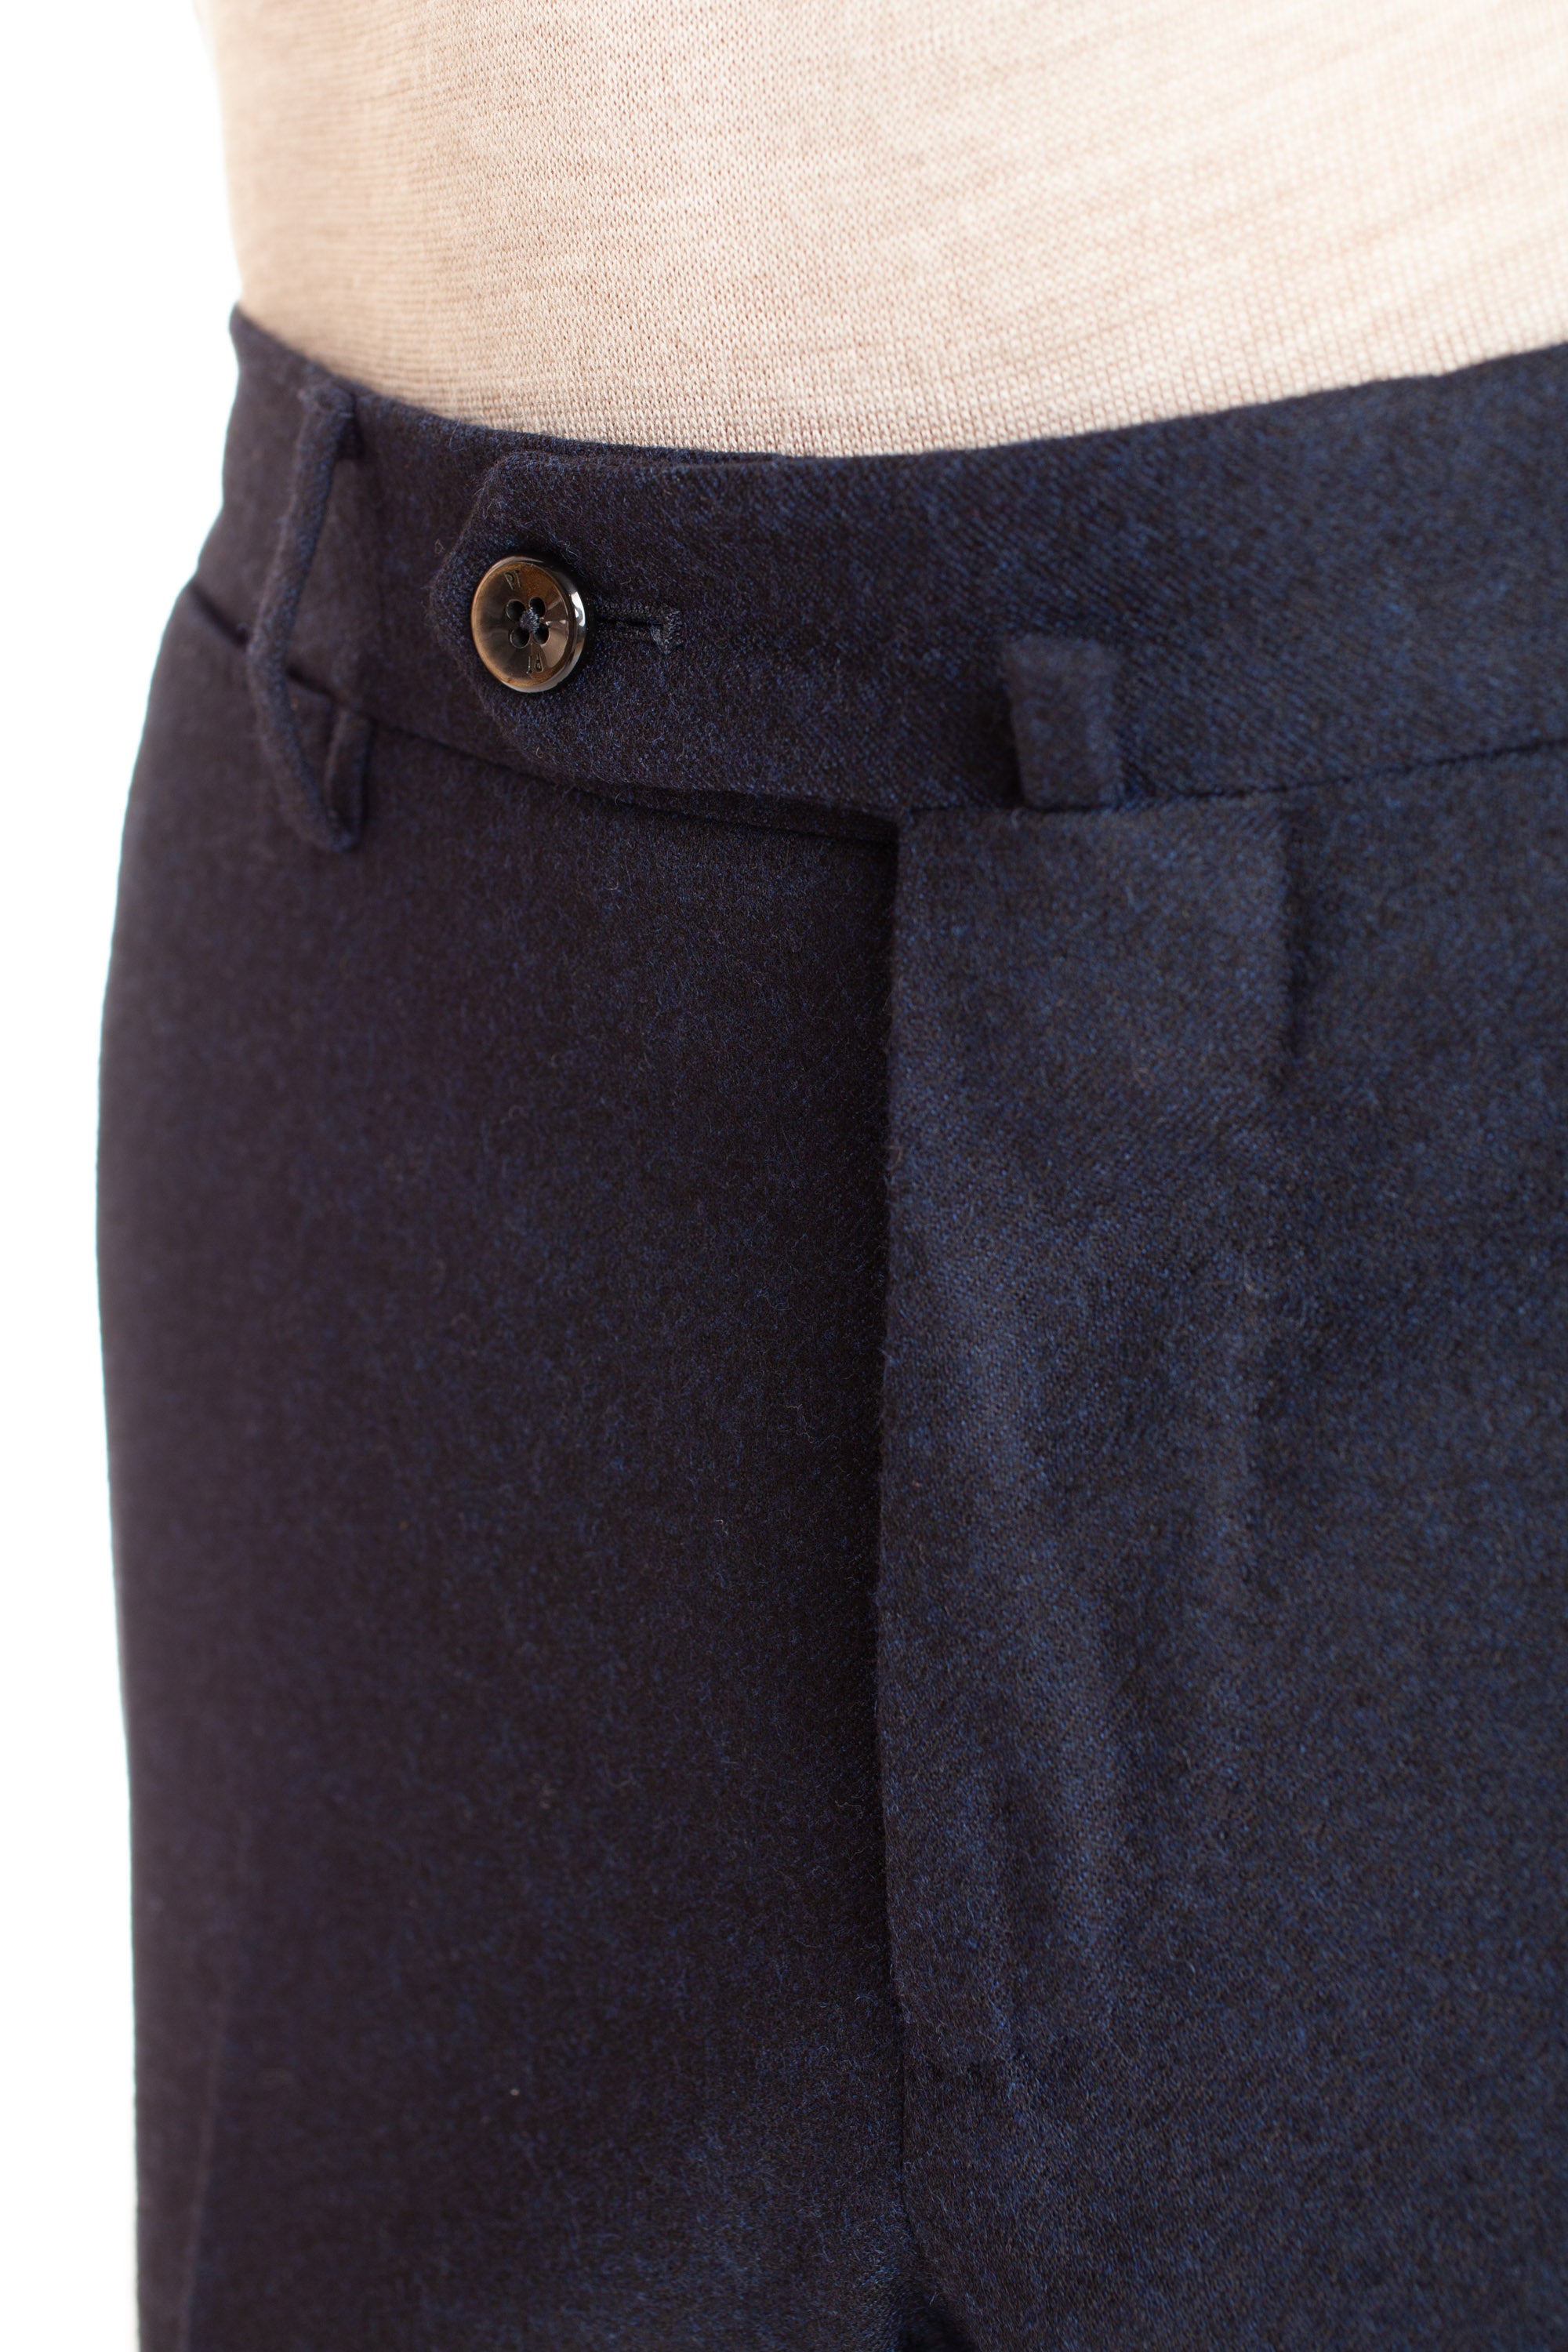 Pantalone in lana super 130's Slim fit fronte piatto